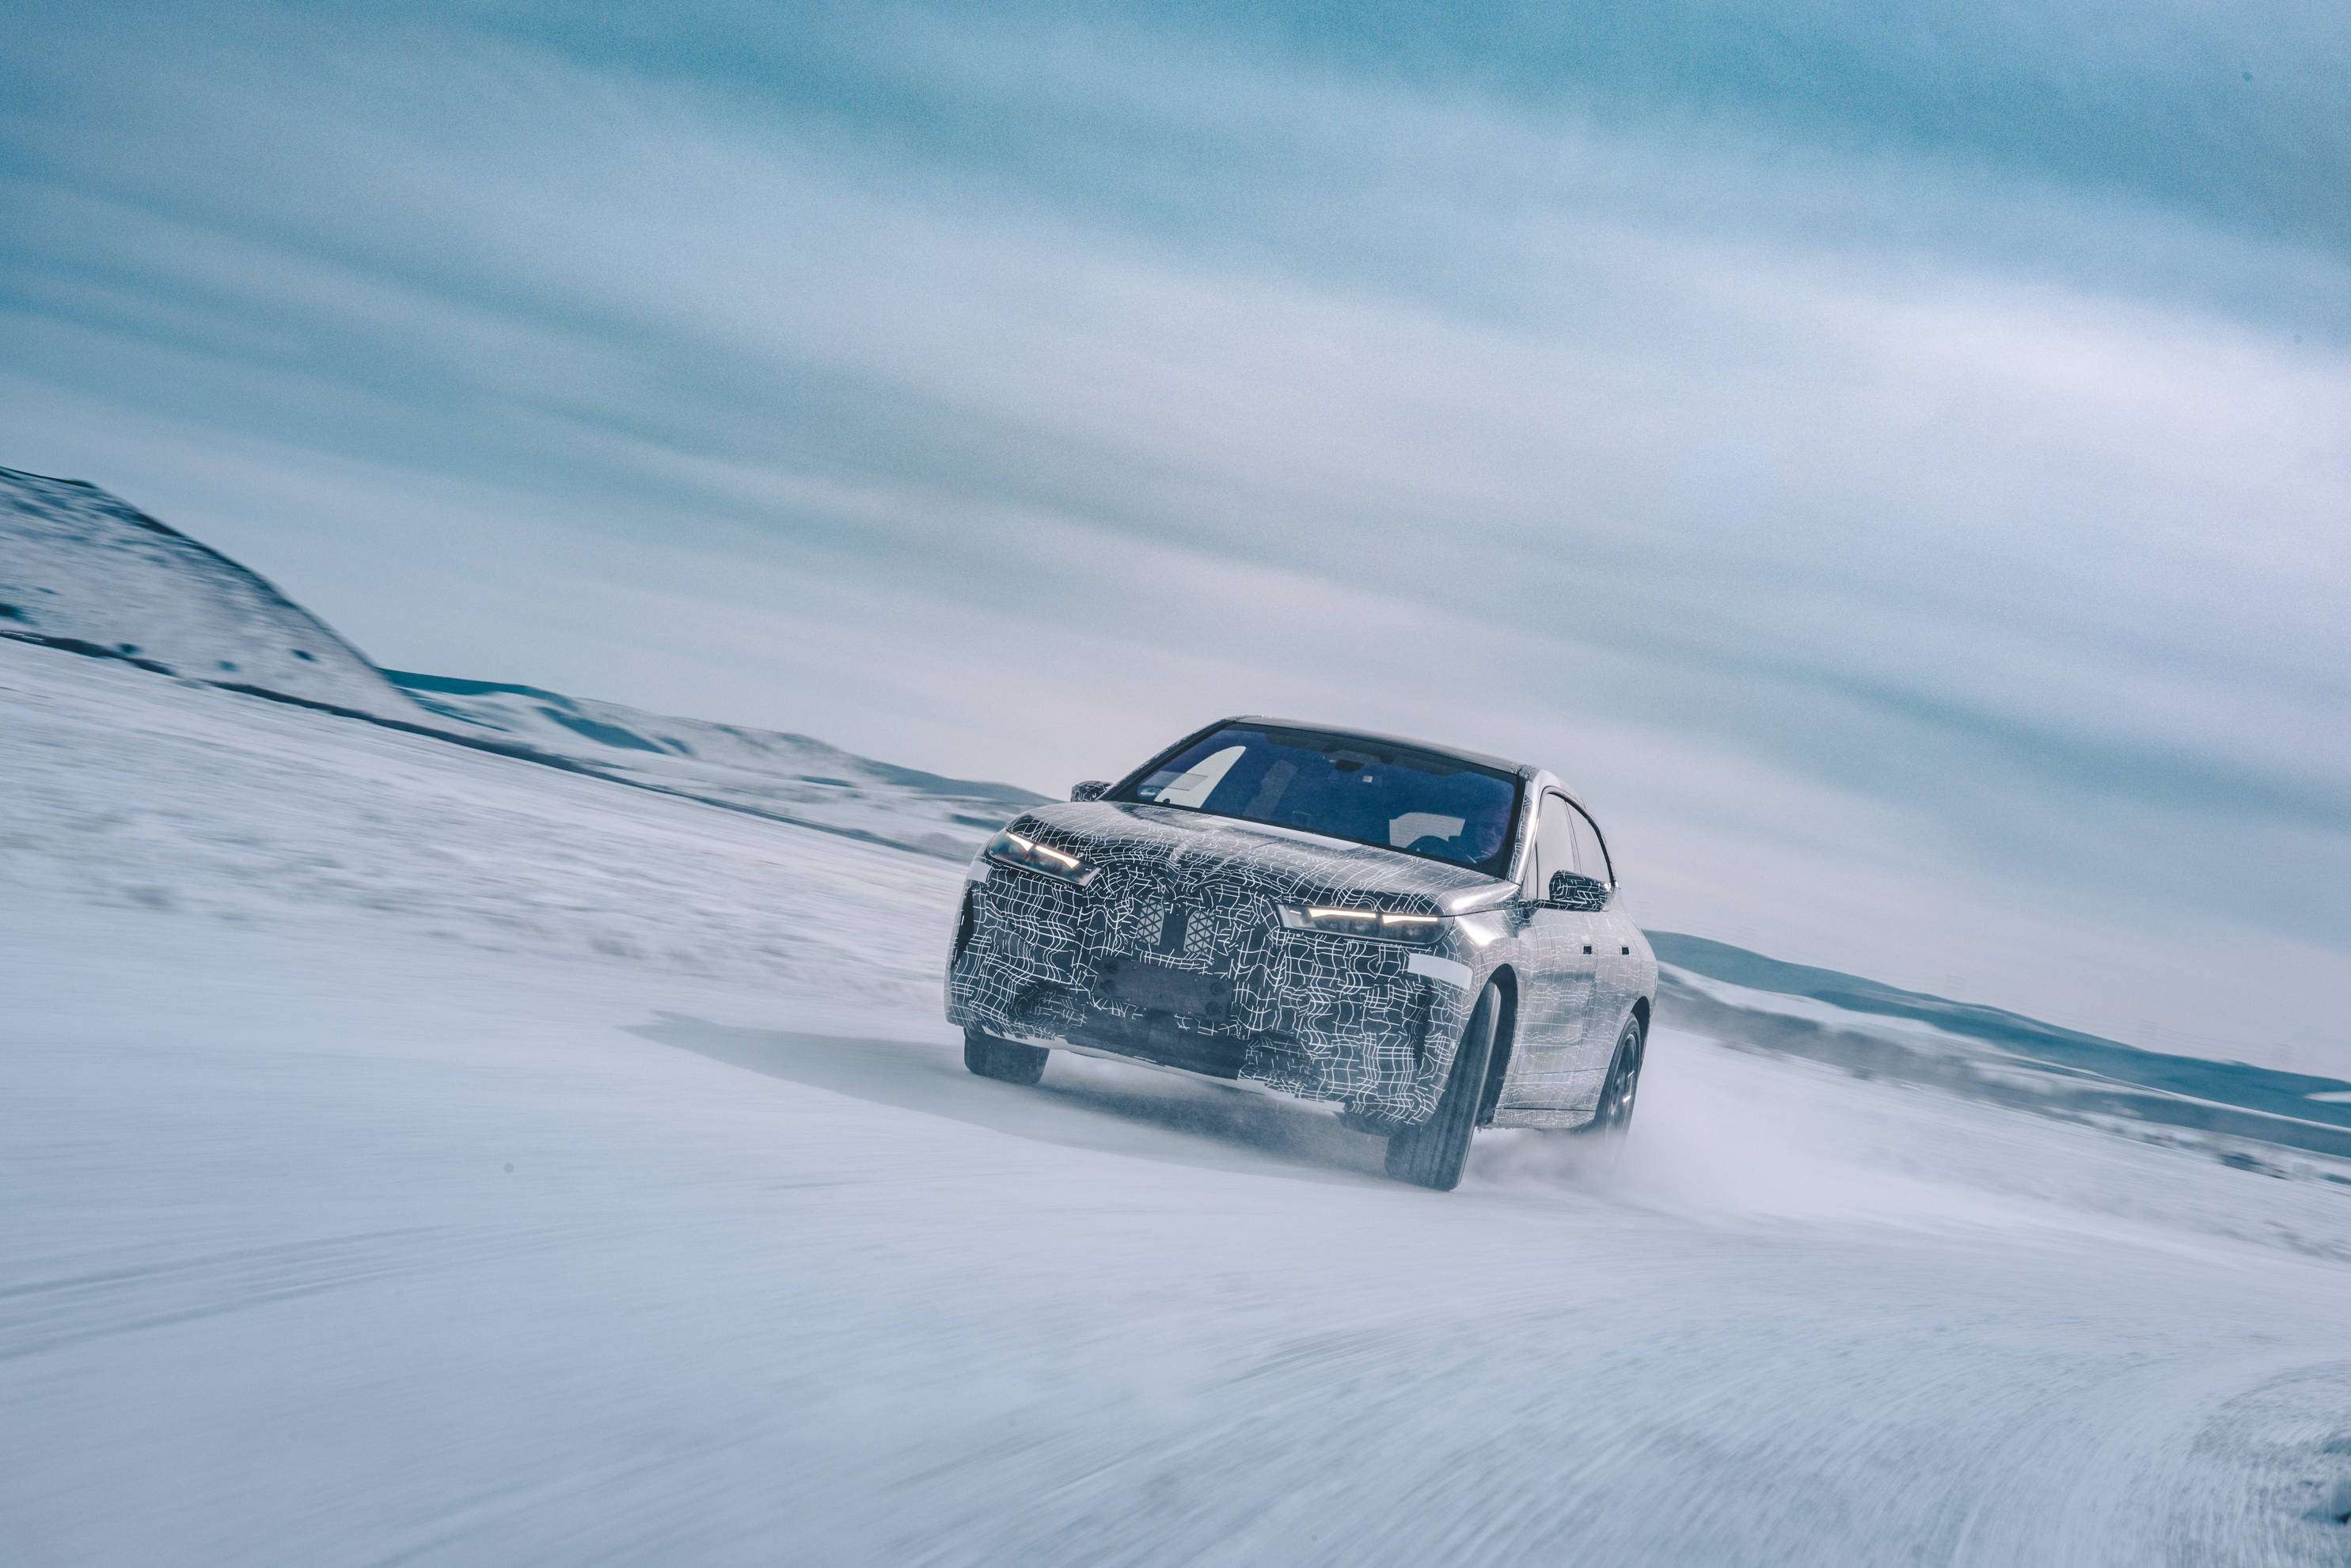 创新纯电动BMW iX原型车在牙克石进行冬季测试 